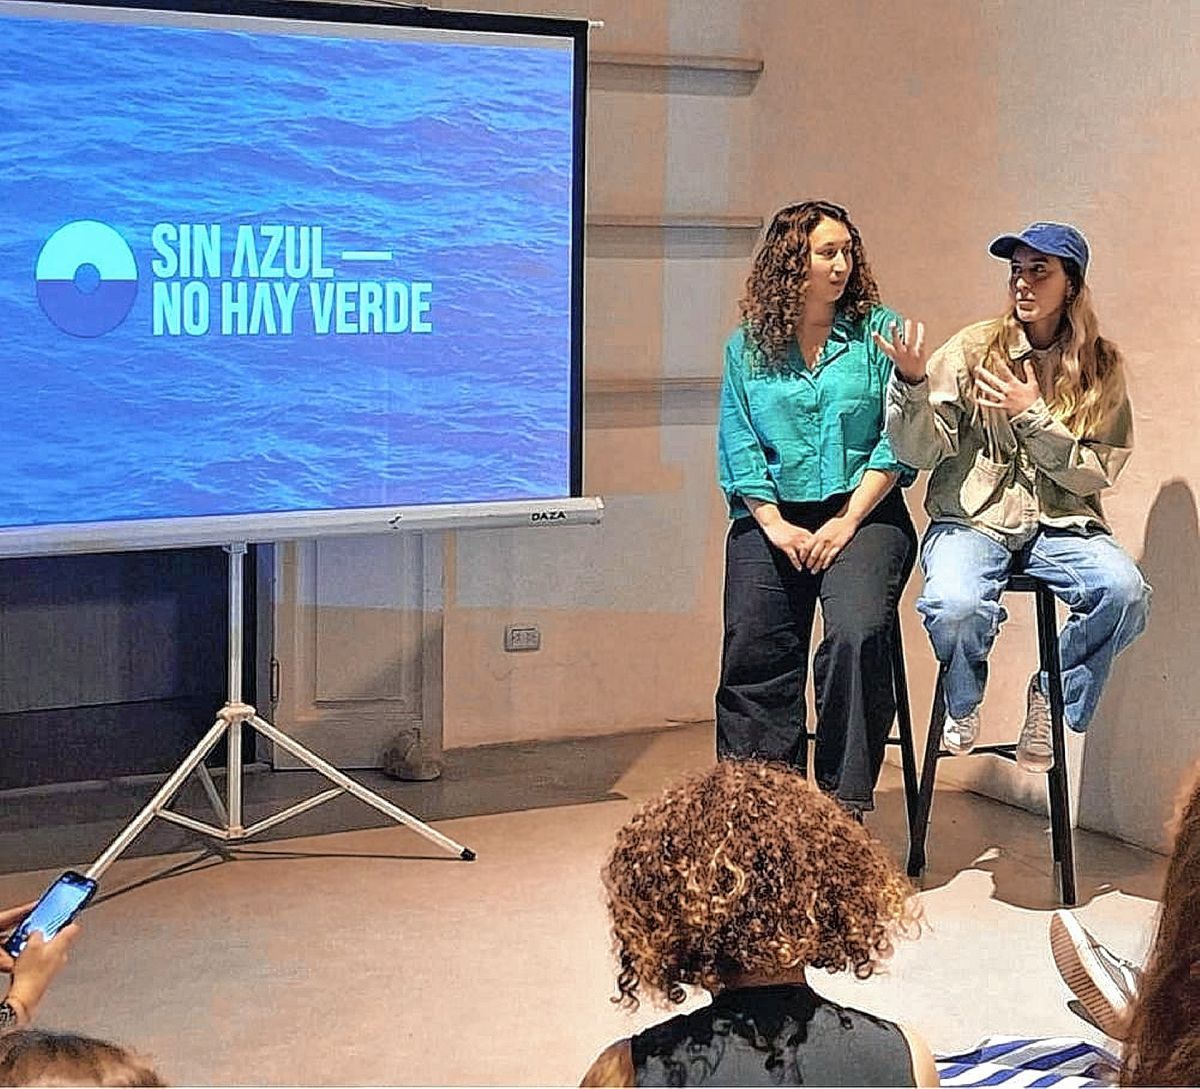 “La marea azul”: cine, conciencia y conservación, una propuesta que vino para quedarse